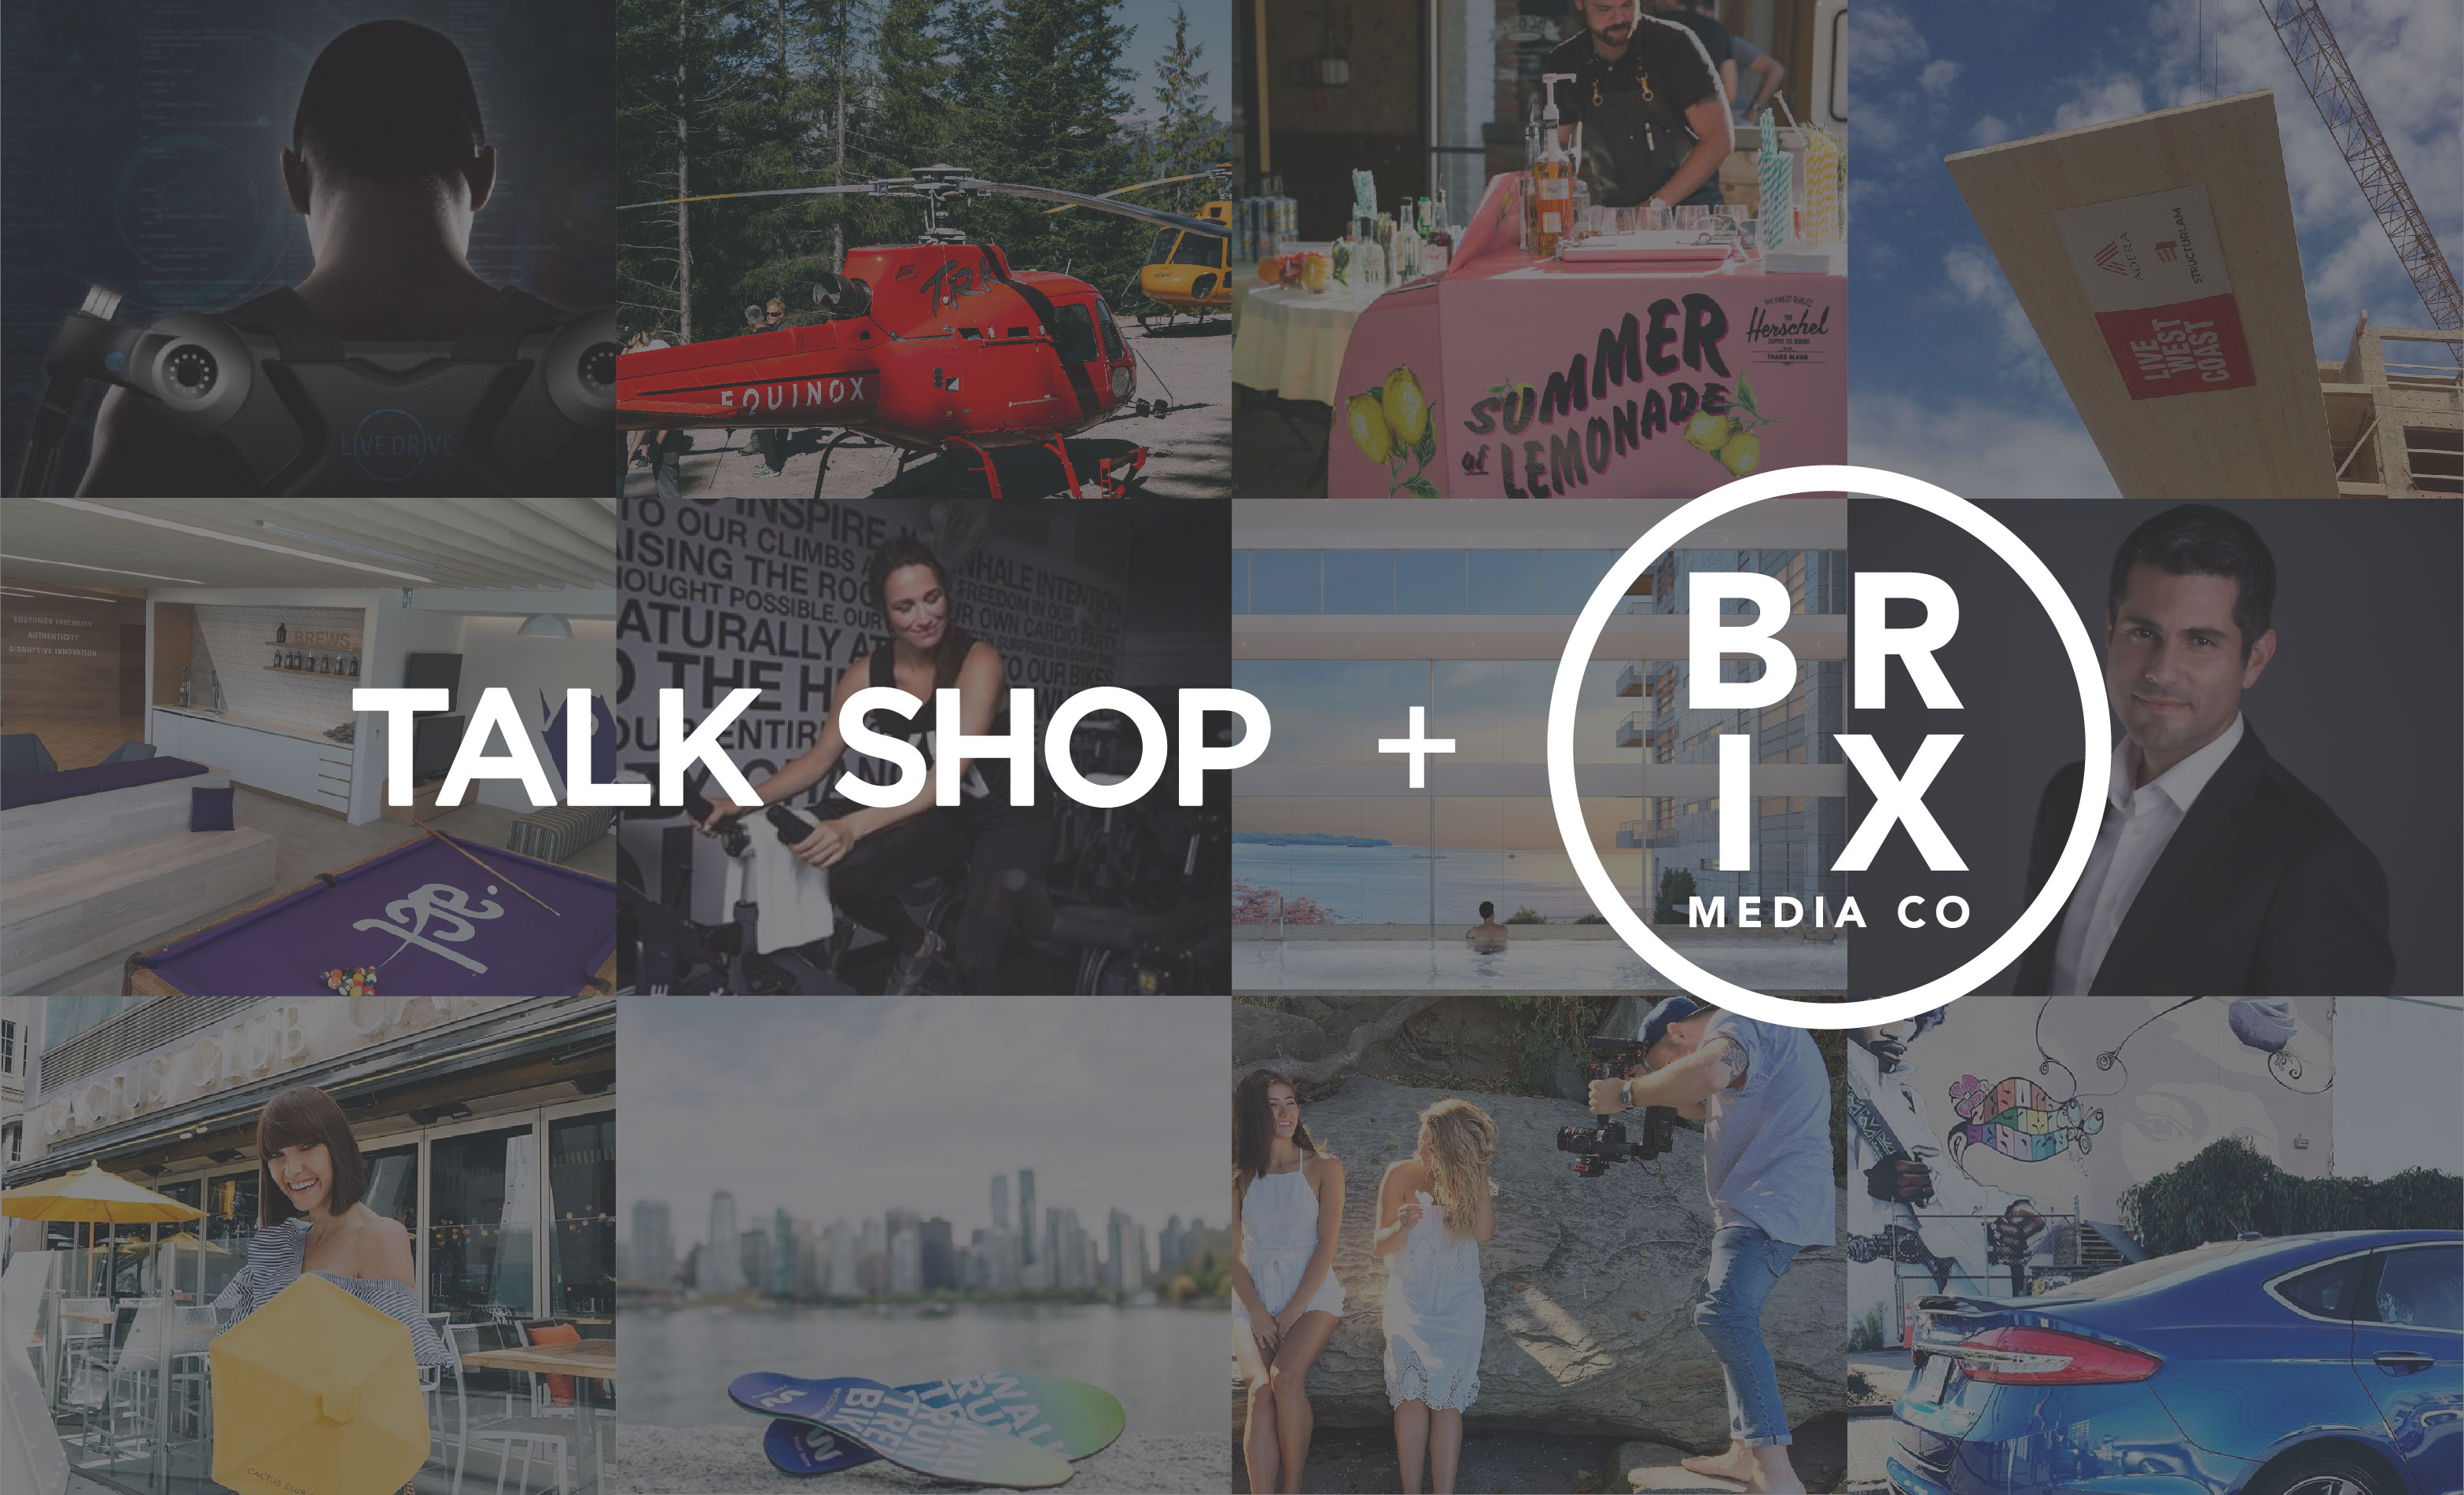 Brix-Media-Co-Talk-Shop-Announcement-Digital-Asset-5-V5 